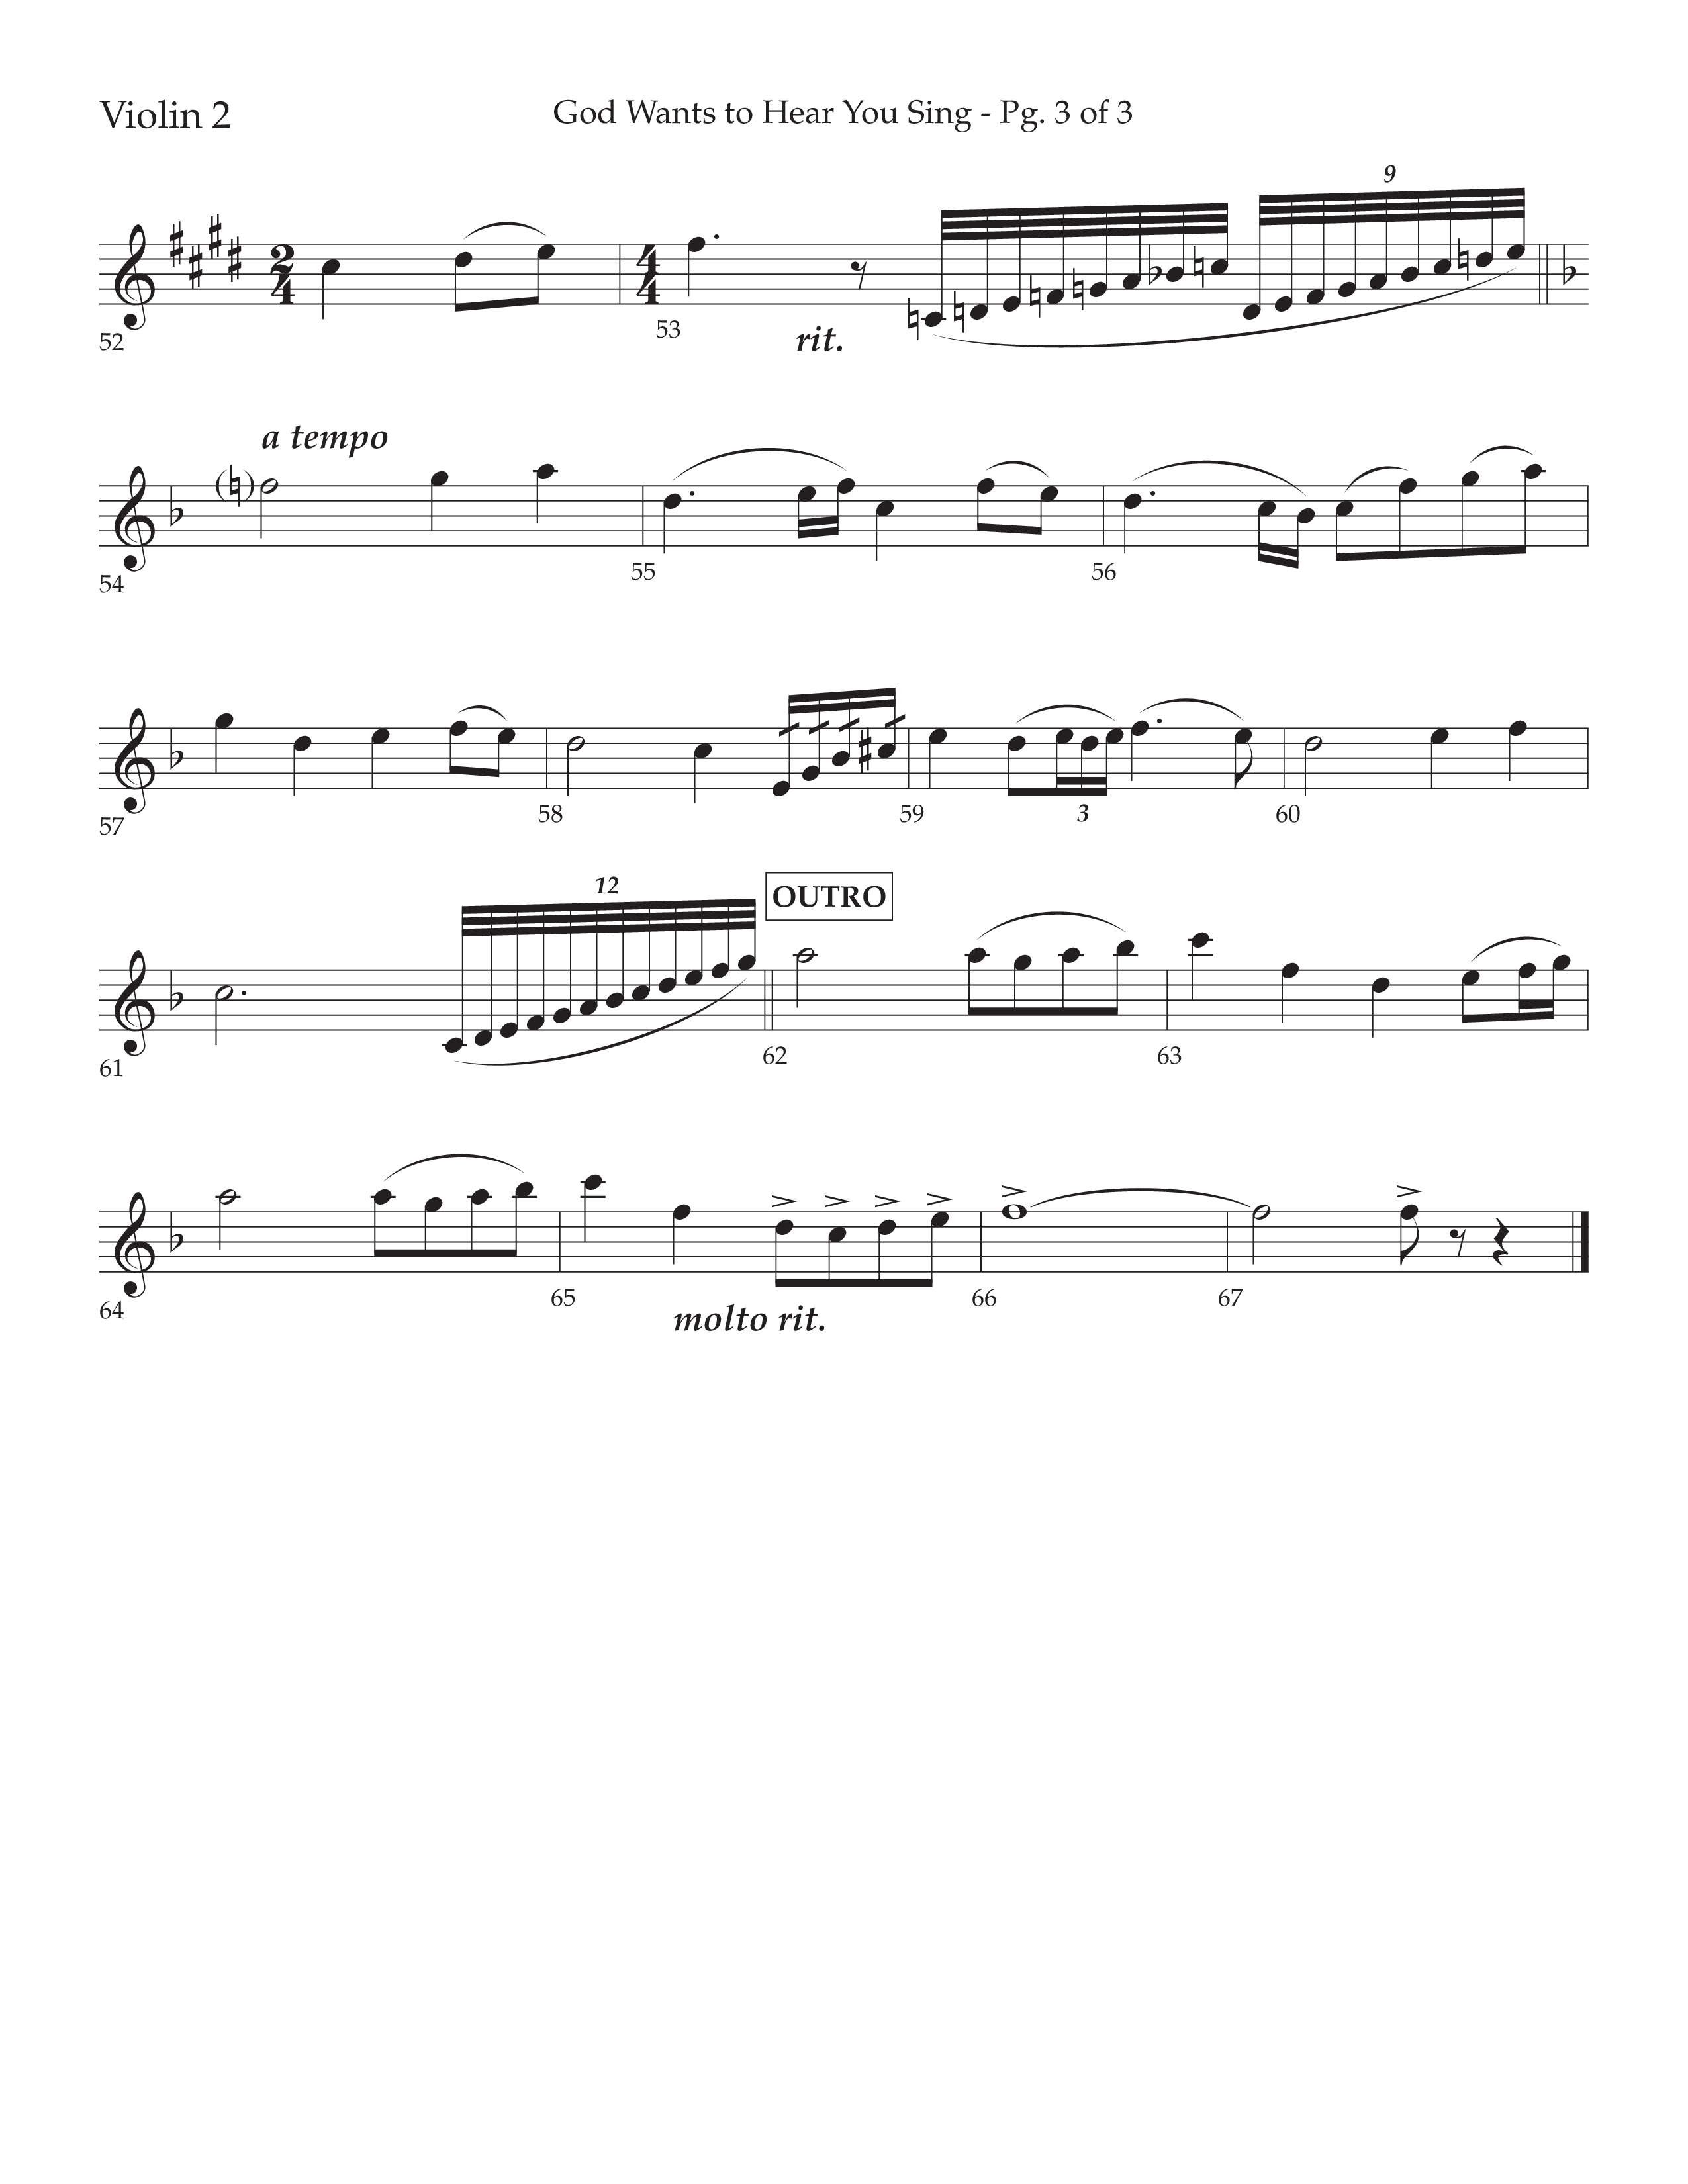 God Wants To Hear You Sing (Choral Anthem SATB) Violin 2 (Lifeway Choral / Arr. Bradley Knight)